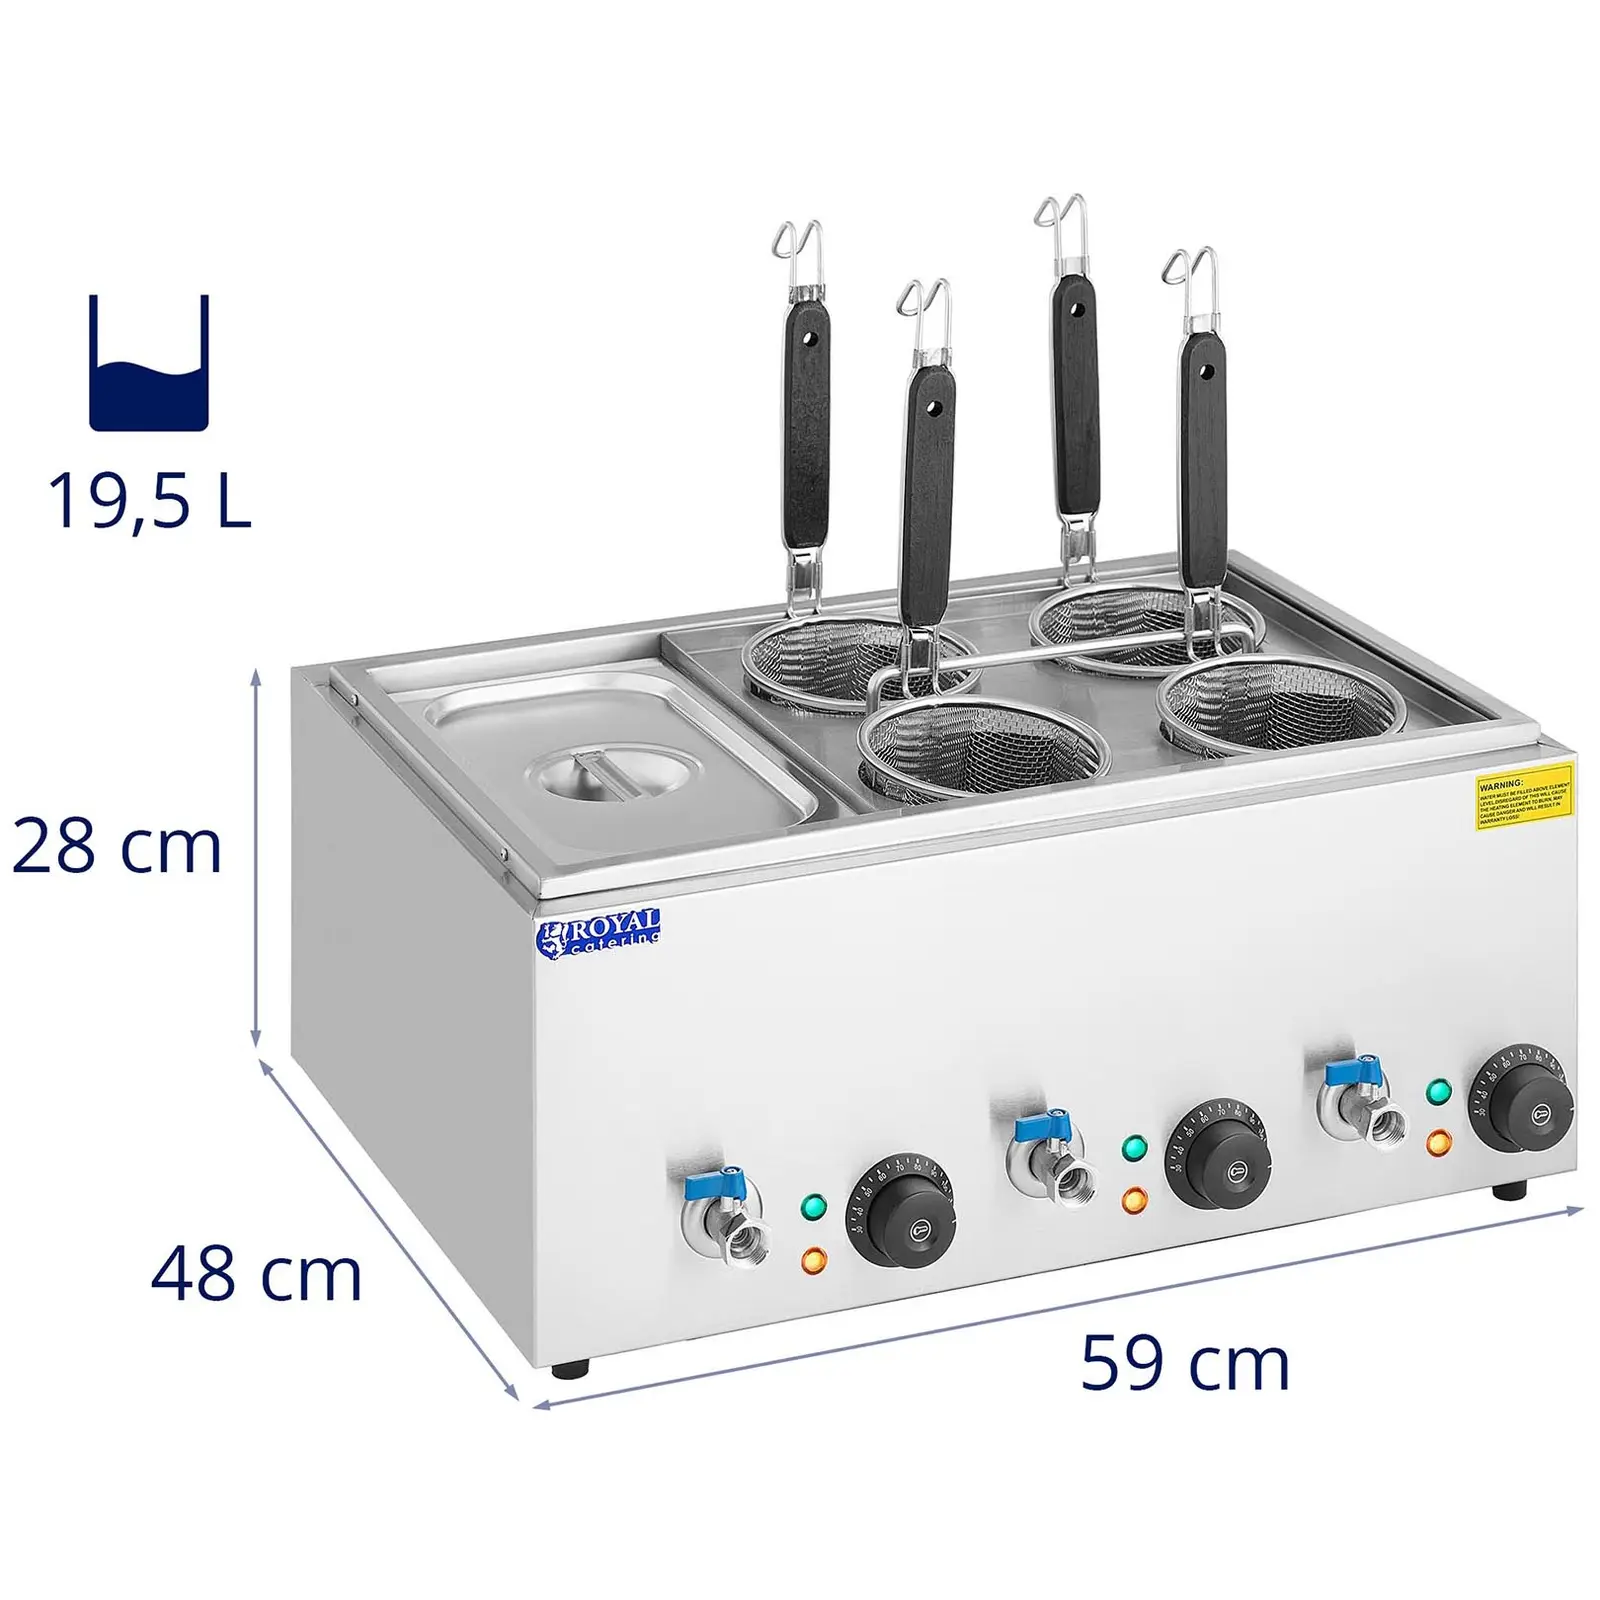 Nudelkocher mit 4 Körben und GN 1/3 Behälter - Temperatur: 30 - 110 °C